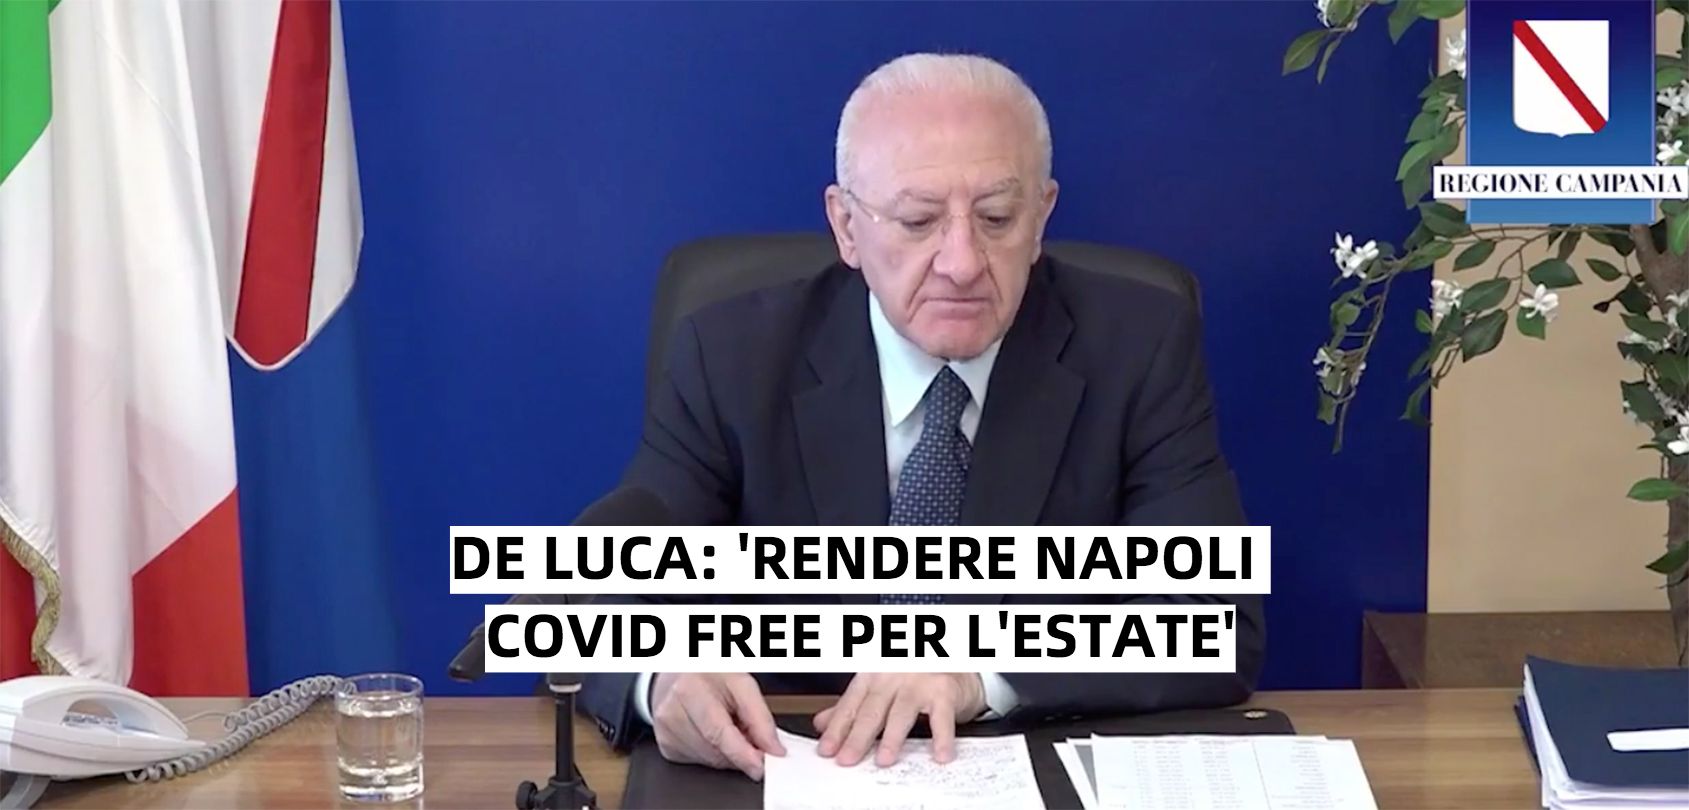 La promessa di De Luca: ‘Napoli covid free entro l’estate’